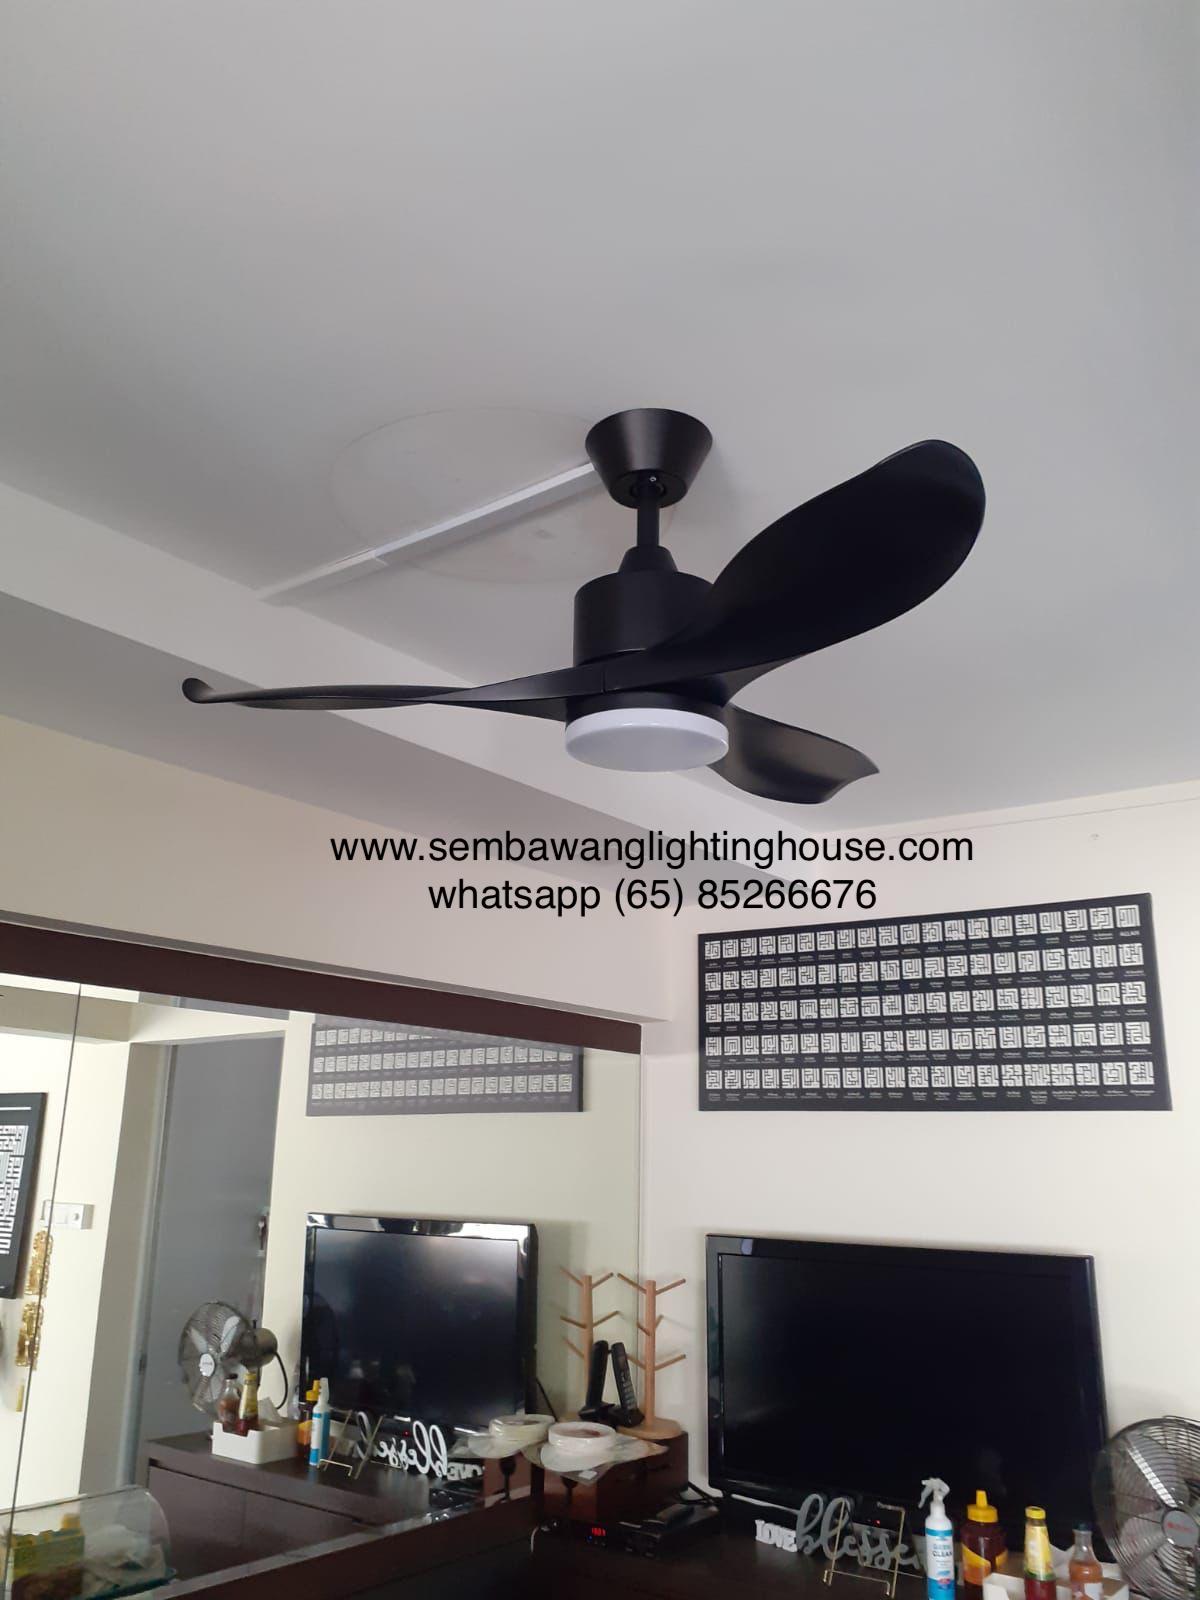 decco-adelaide-ceiling-fan-with-light-black-sembawang-lighting-house-01.jpg